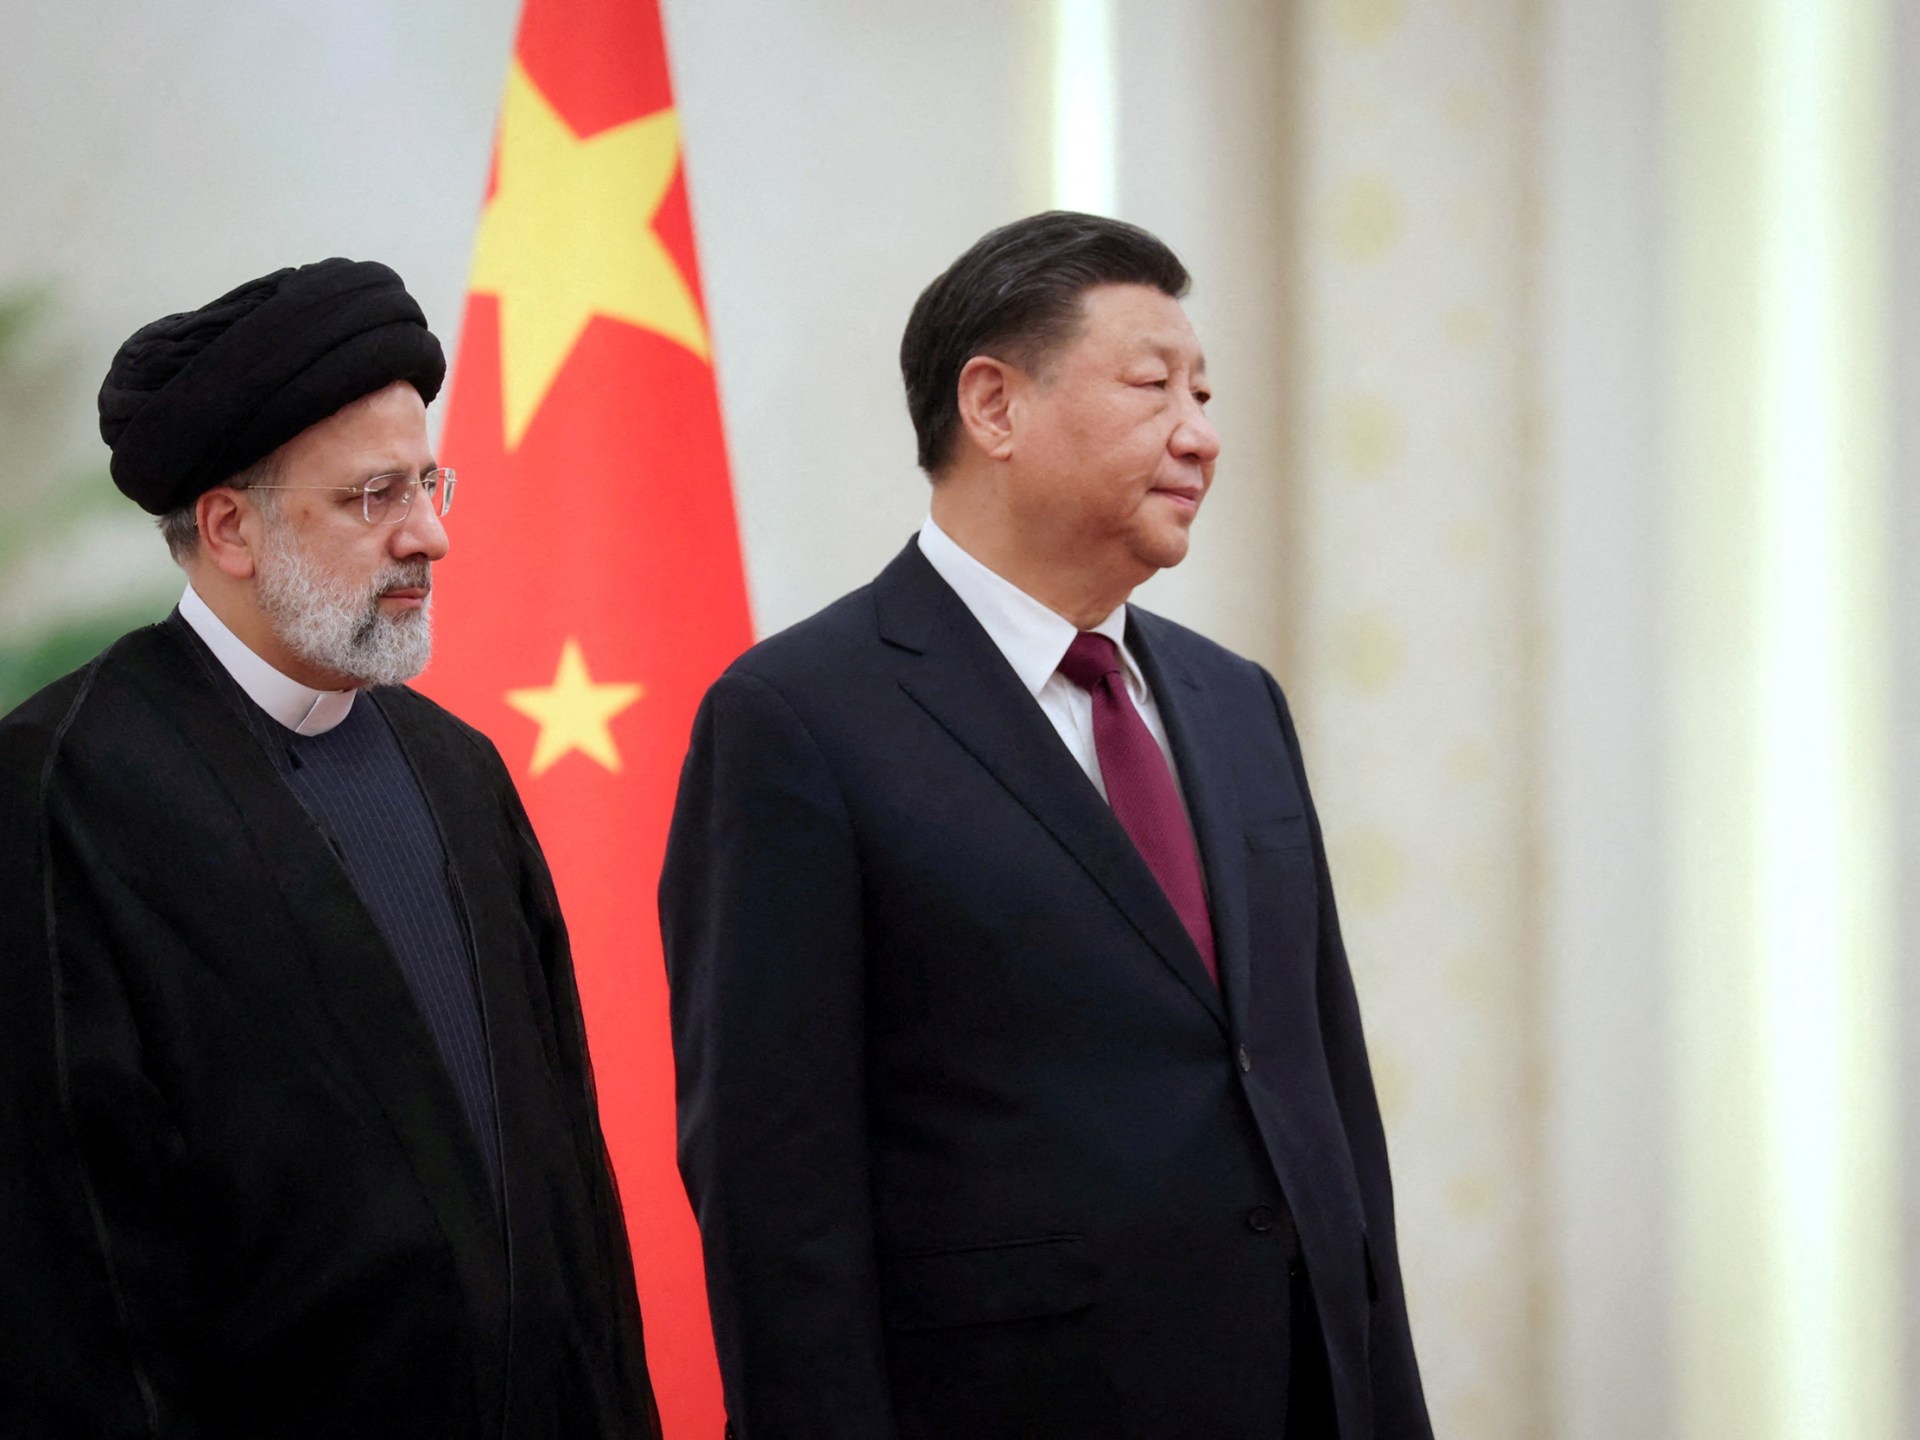 Cina menyerukan pencabutan sanksi Iran selama kunjungan Raisi |  Berita